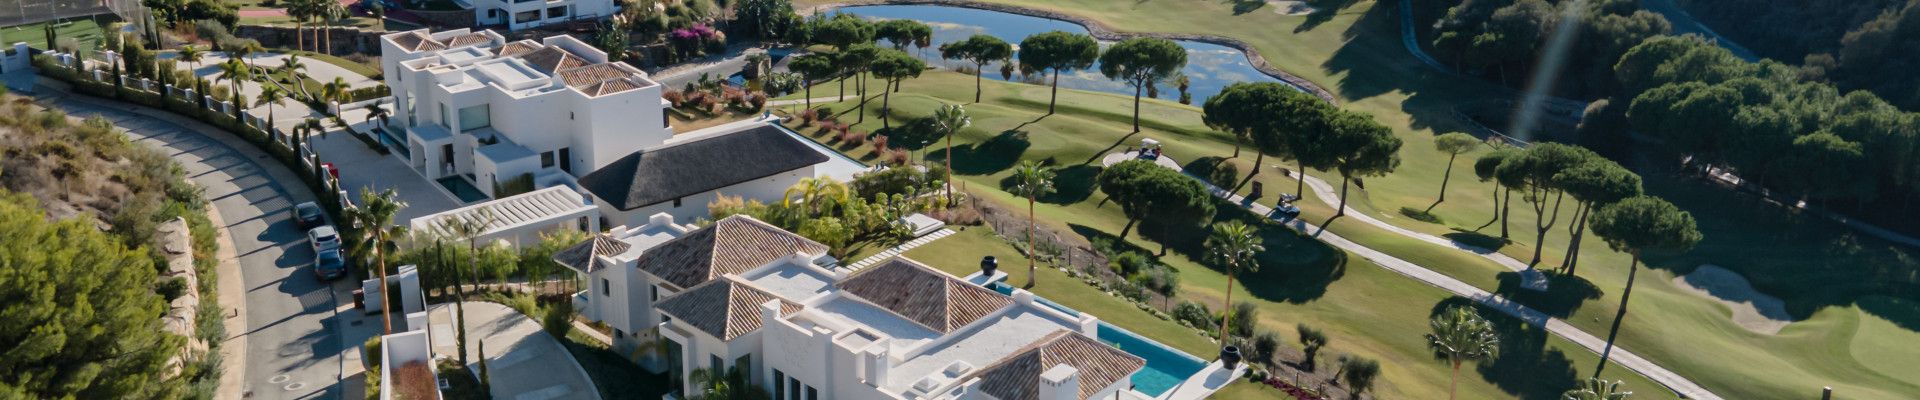 Villas de lujo en venta en Marbella Club Golf Resort